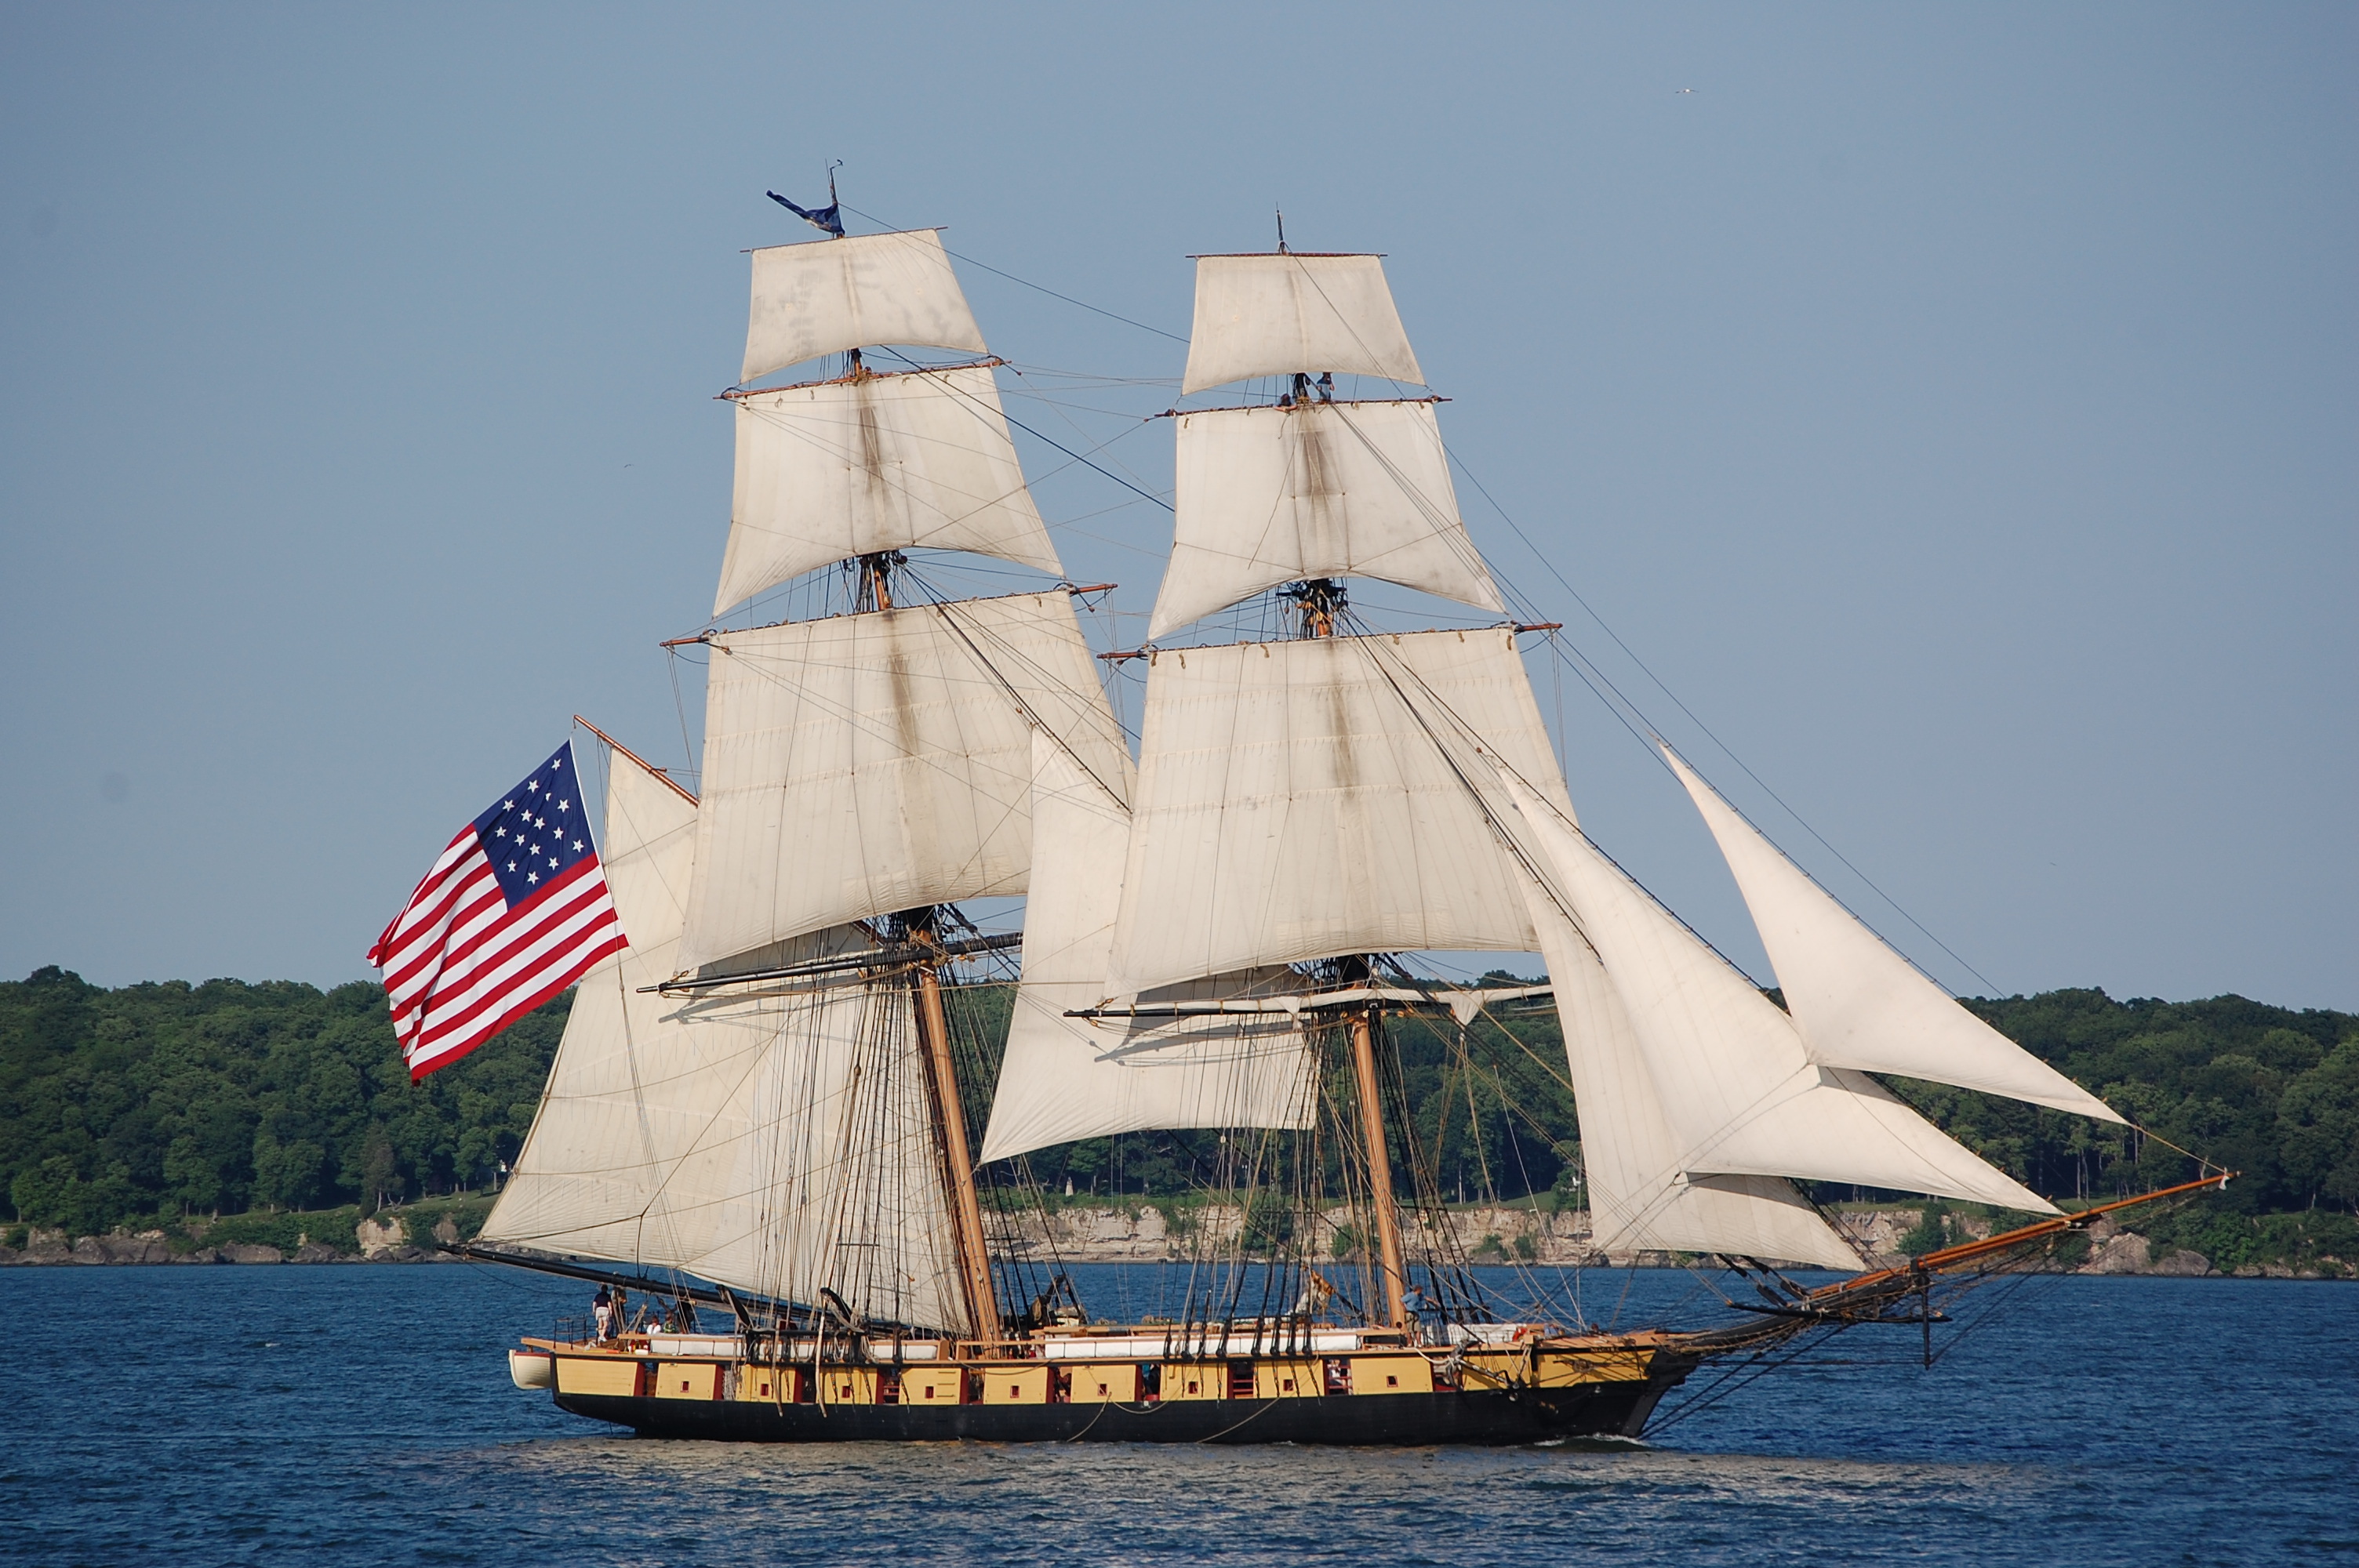 Flagship Niagara under sail